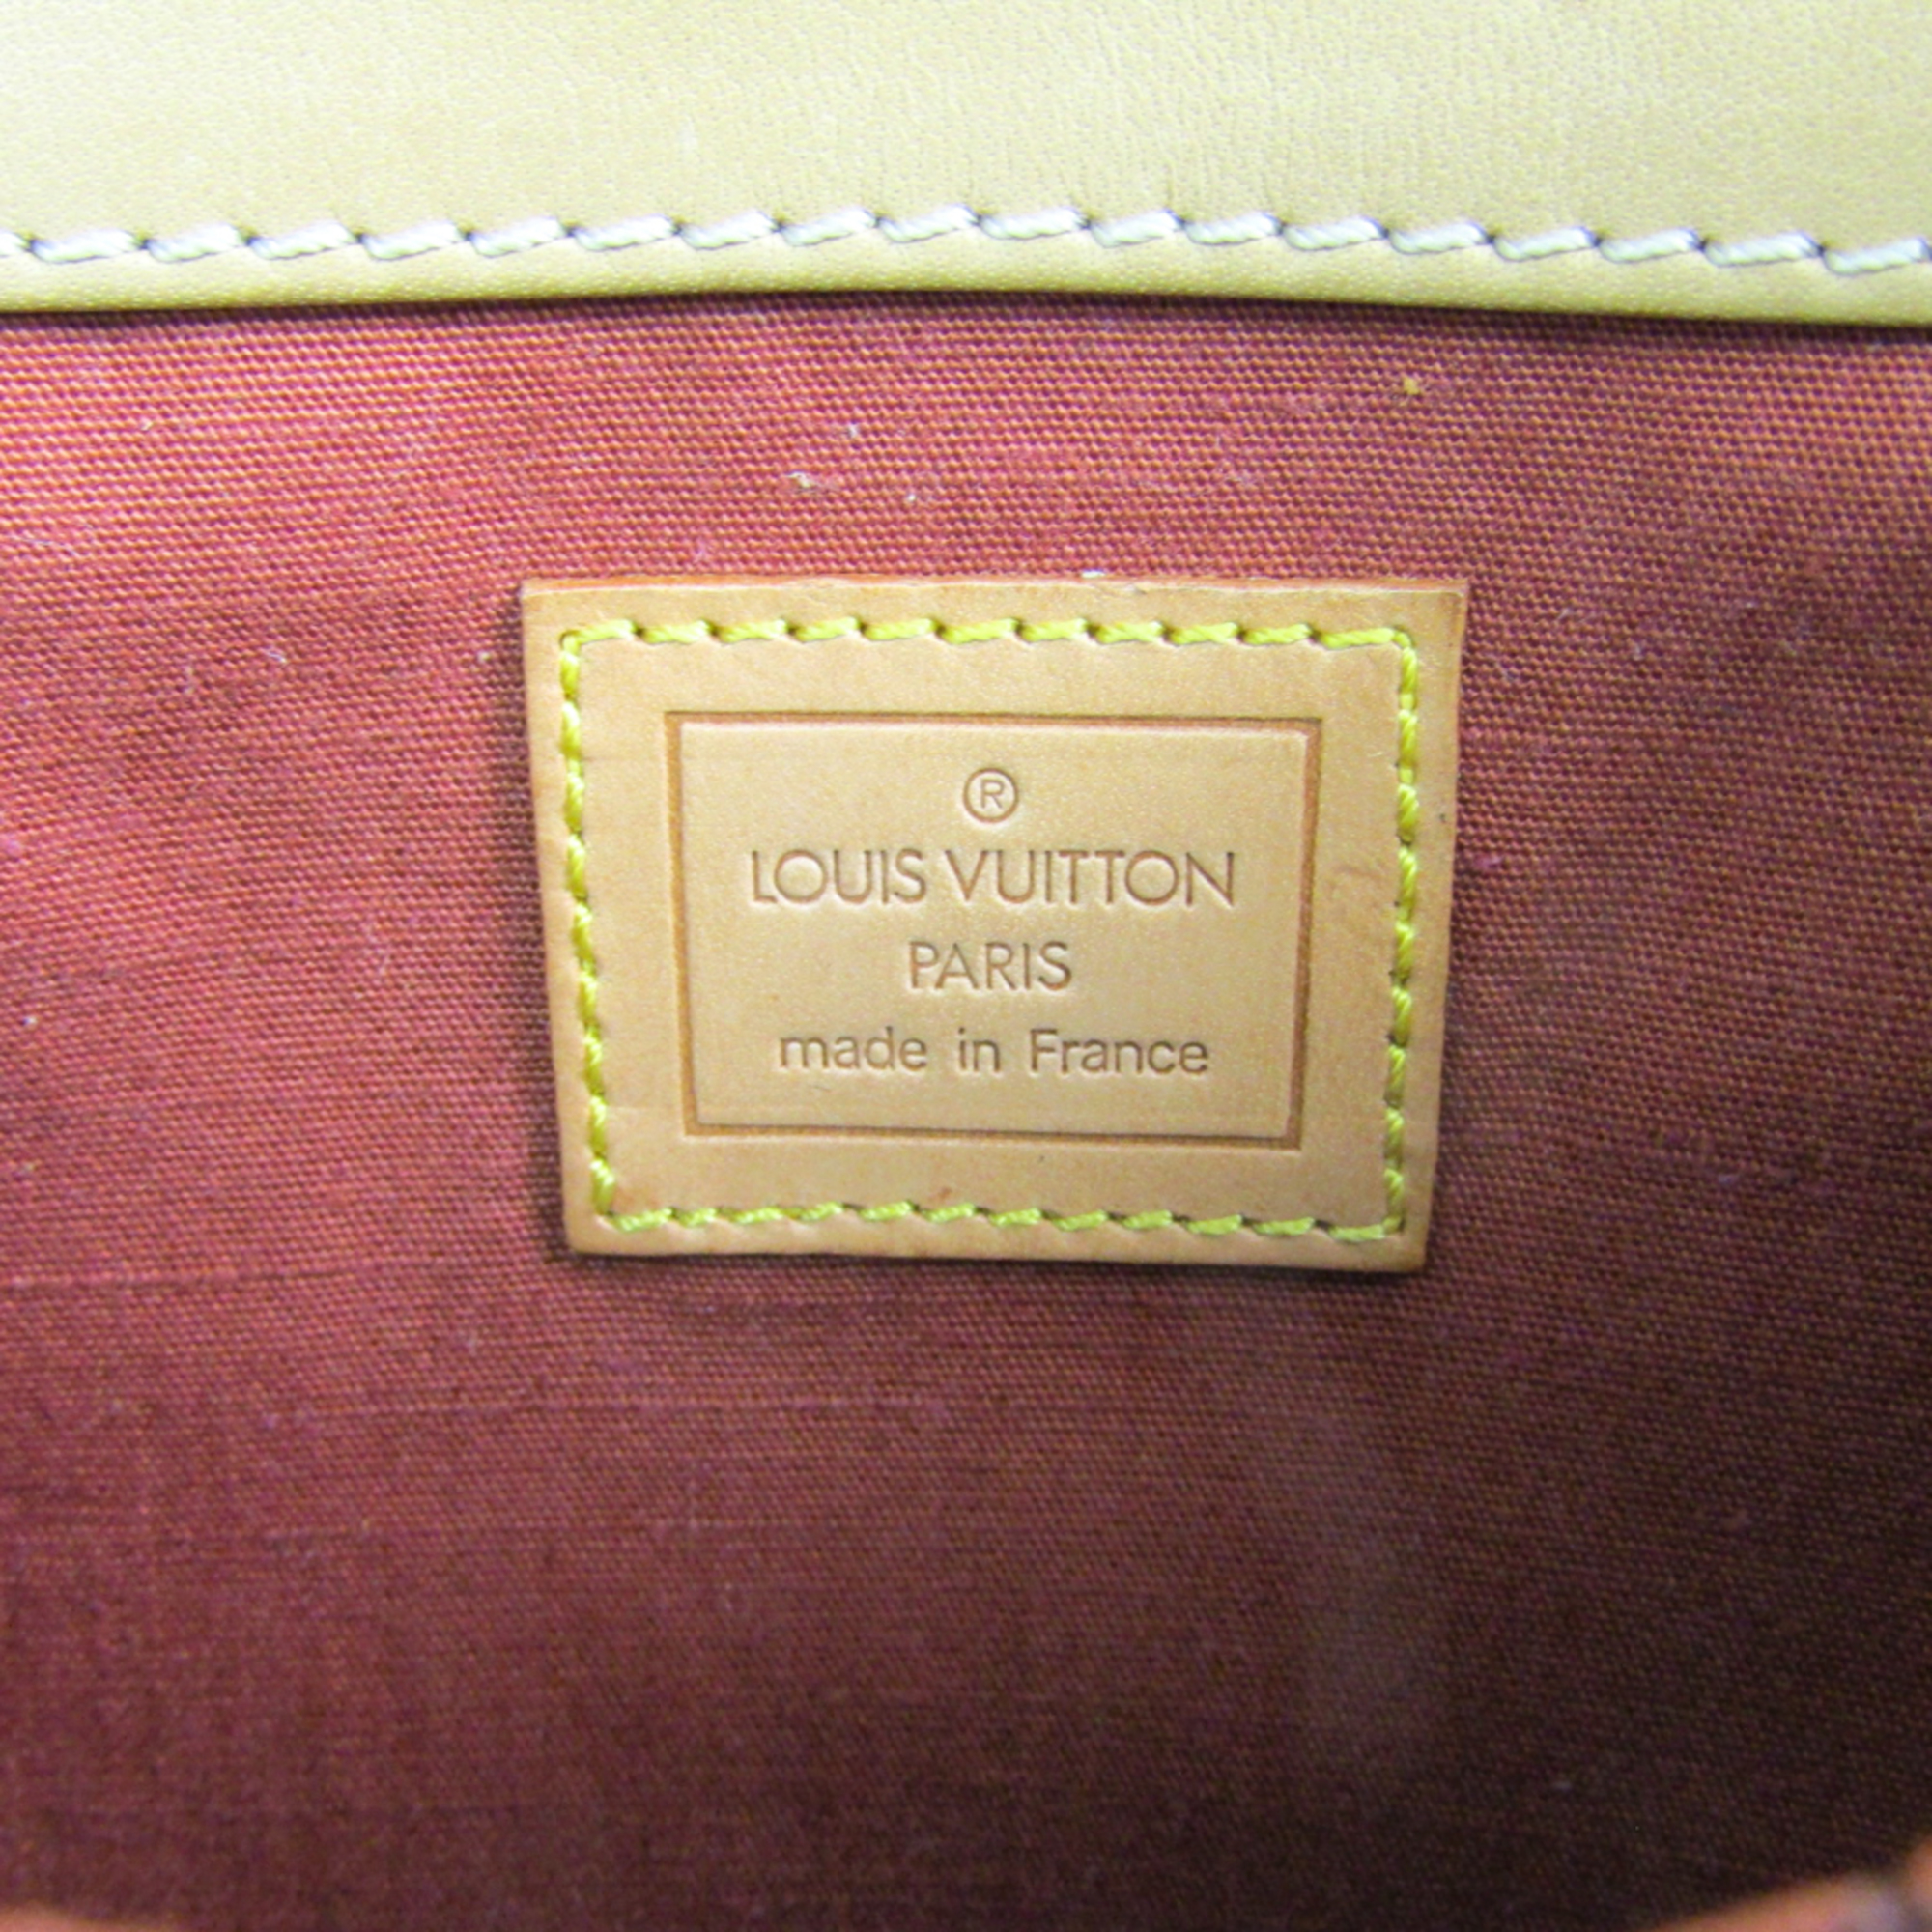 Louis Vuitton Paris Saint-Germain Limited Edition Women's Pouch Beige